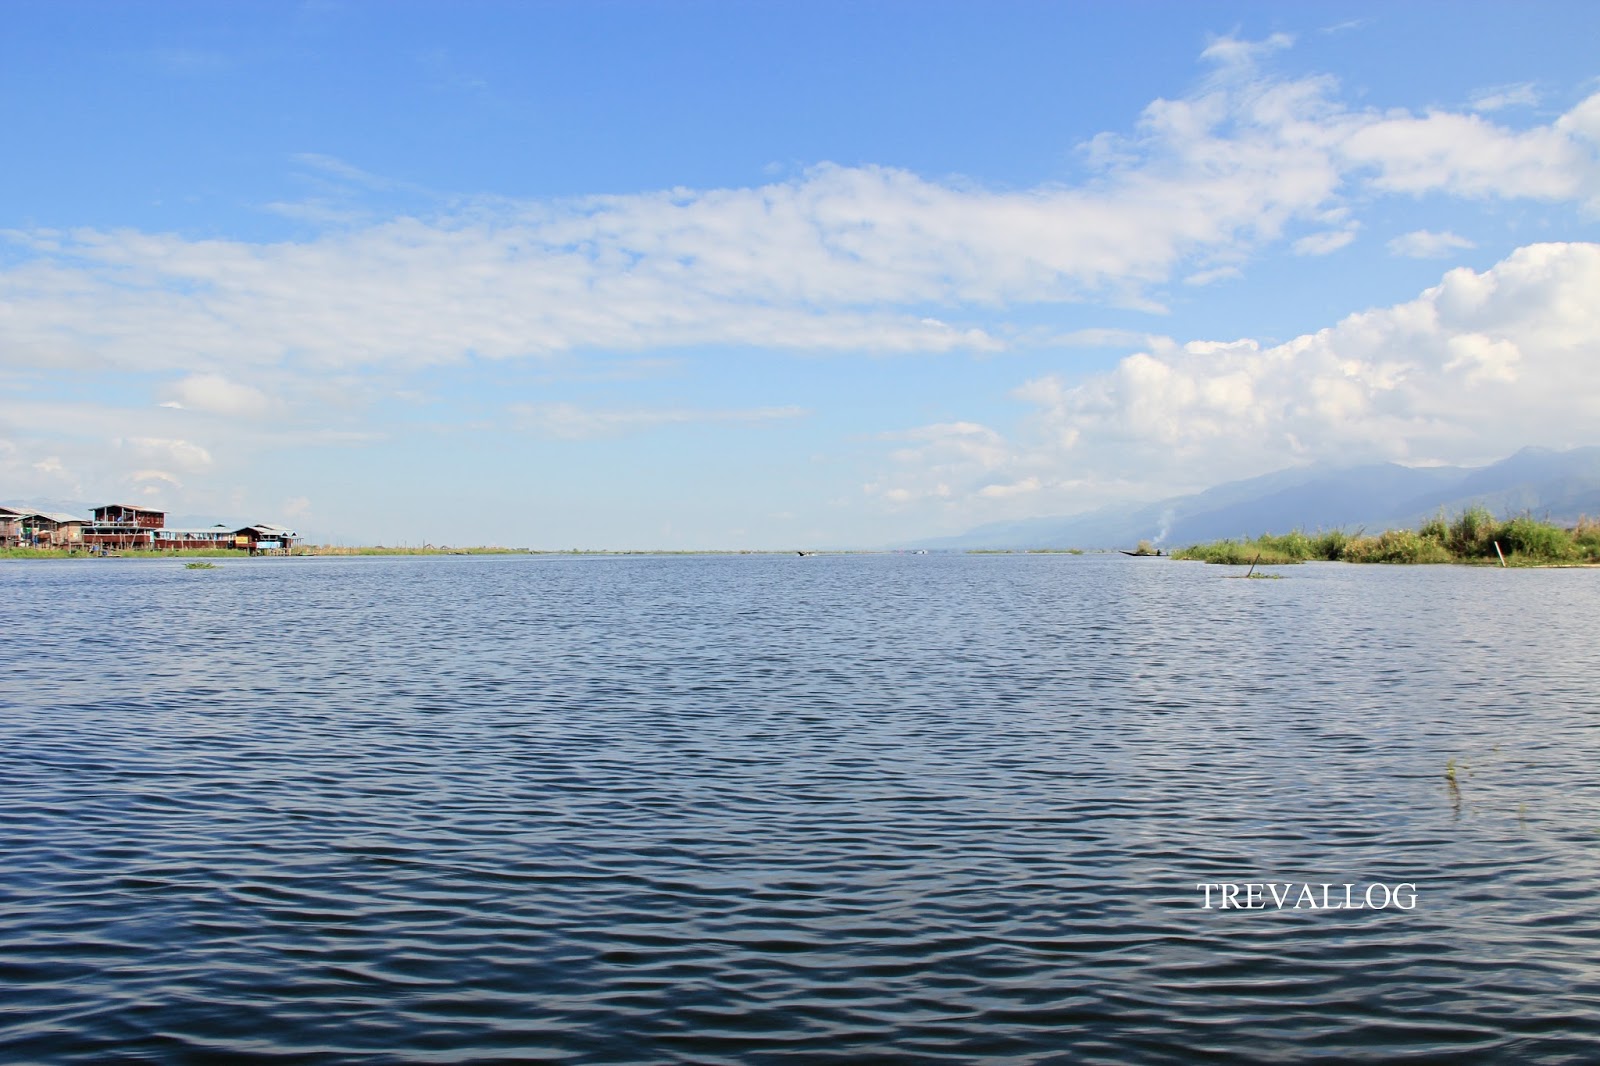 Blissful scenery in Inle Lake, Myanmar